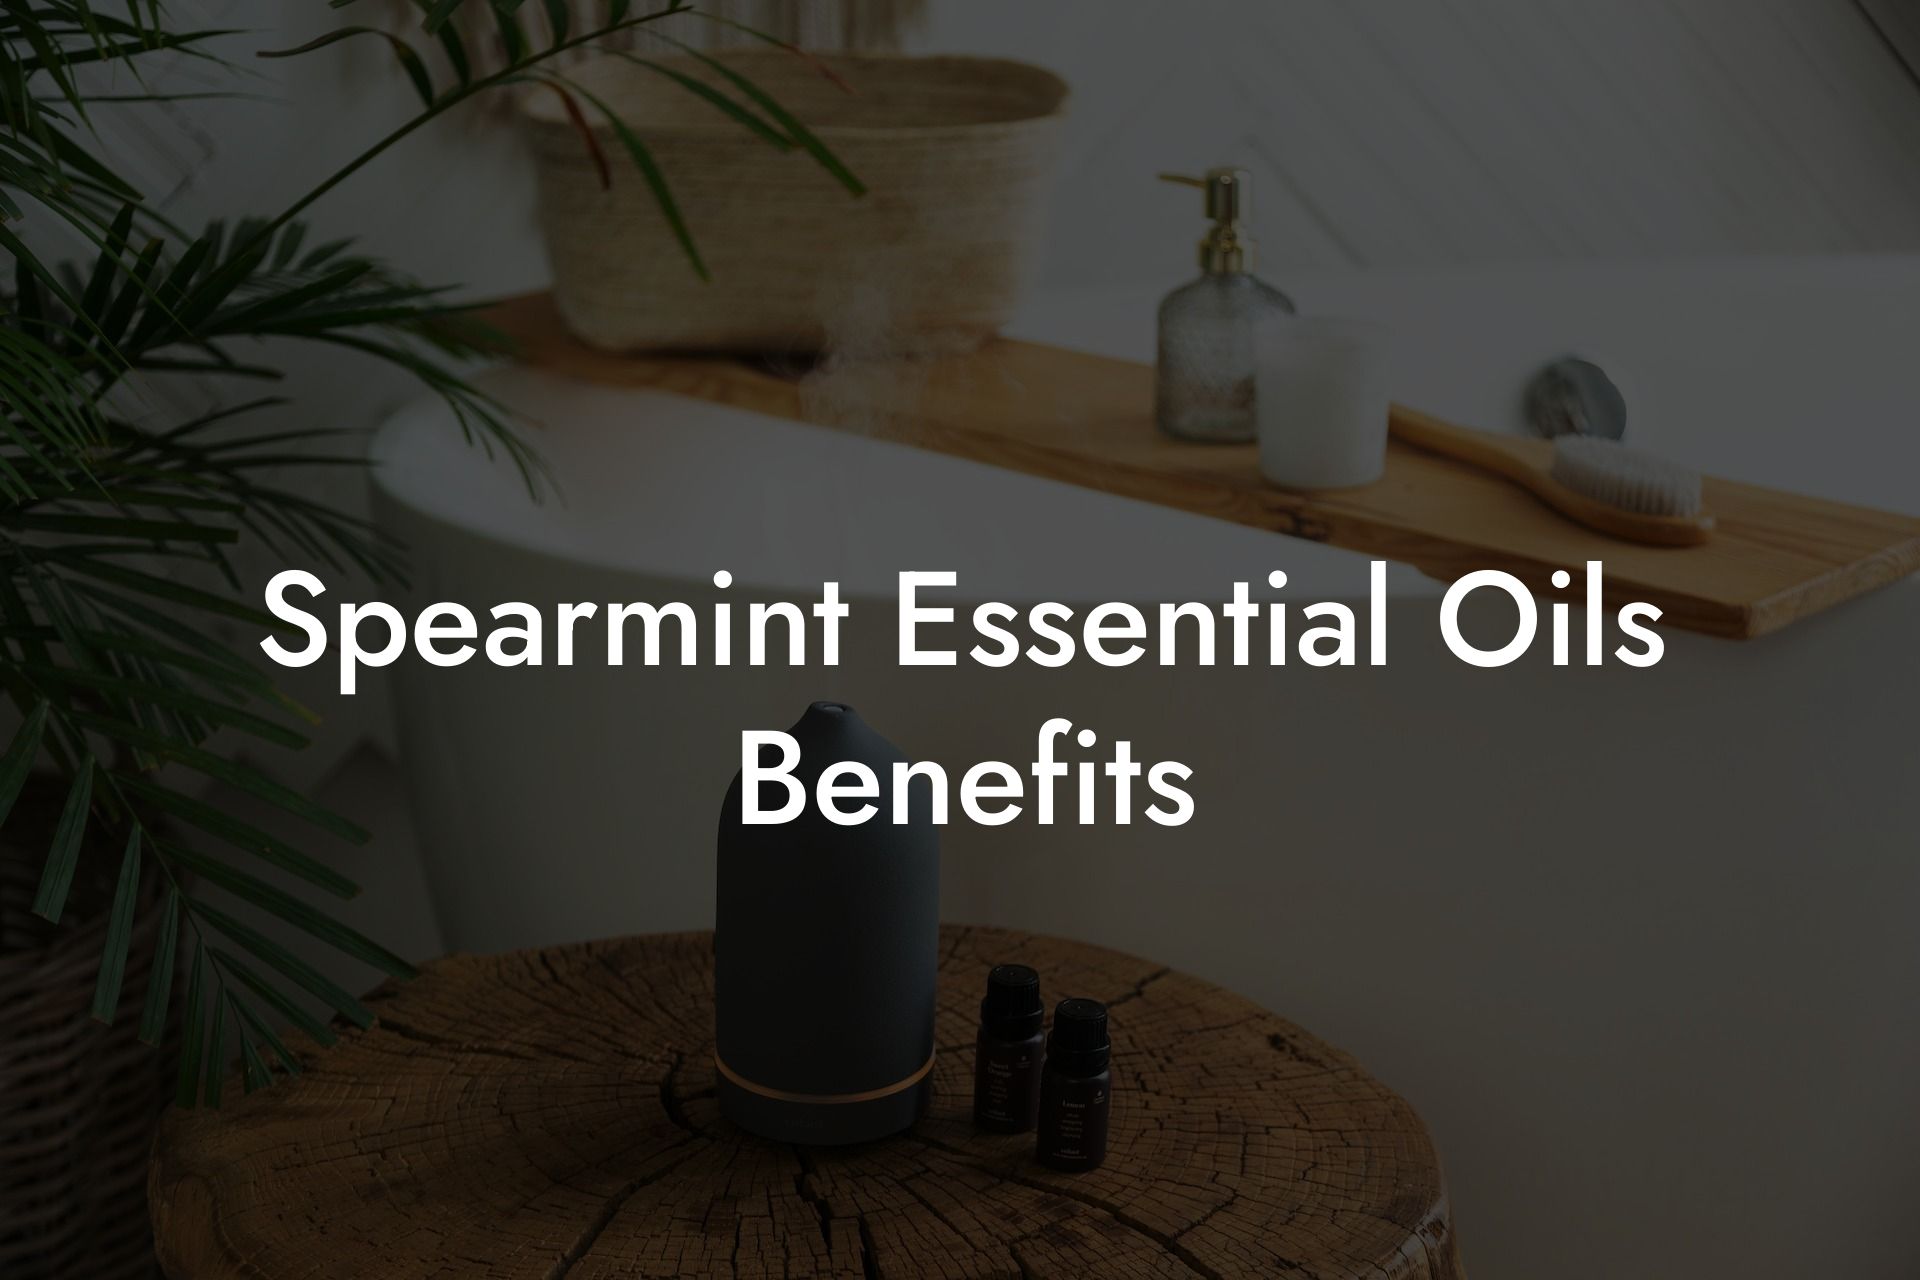 Spearmint Essential Oils Benefits